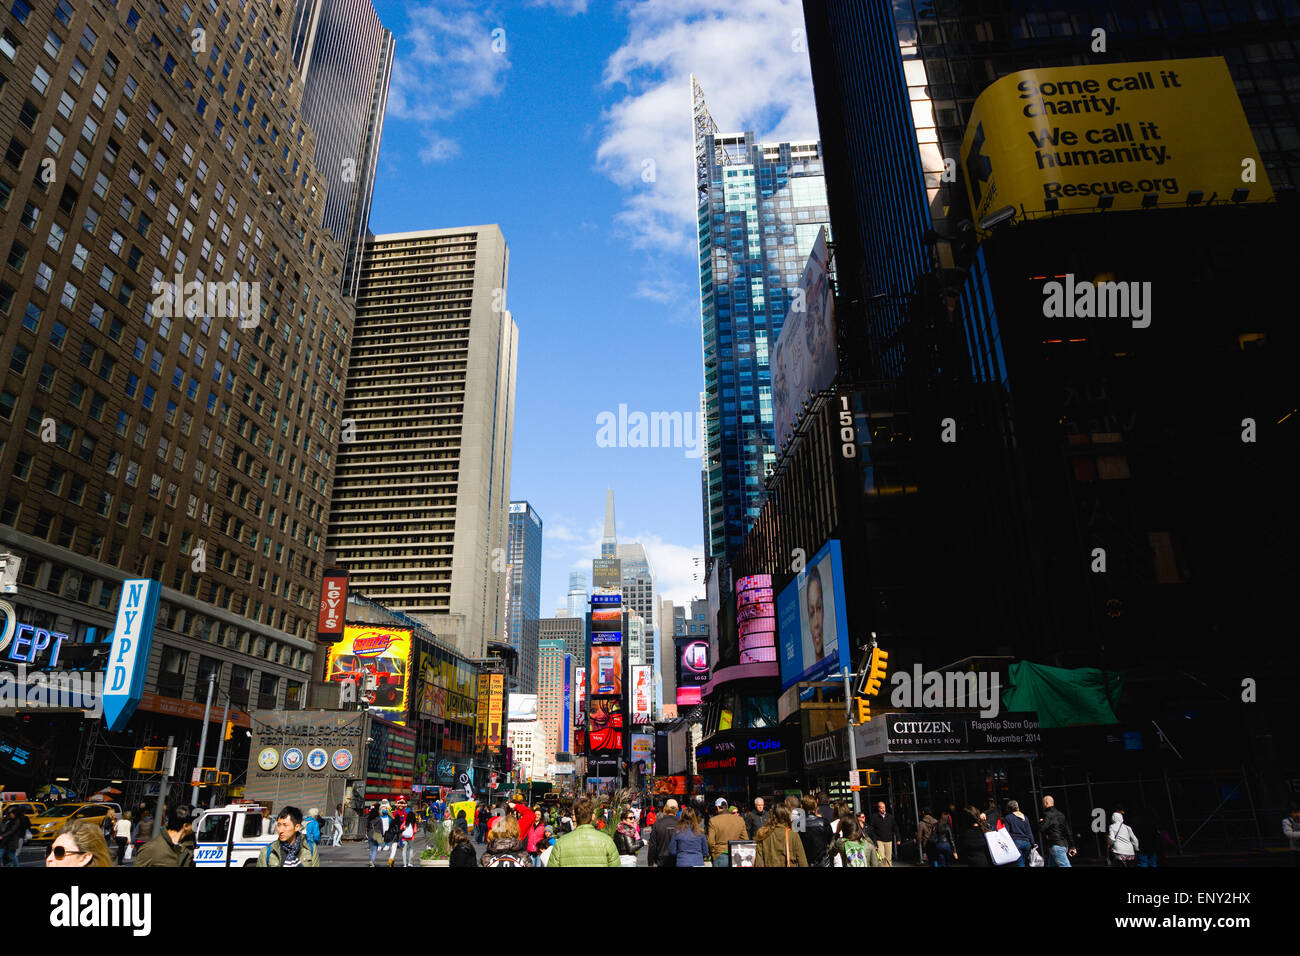 Stati Uniti d'America, New York Manhattan, Times Square, nel quartiere dei teatri con grattacieli che trasportano billboard e video TV pubblicità. Foto Stock